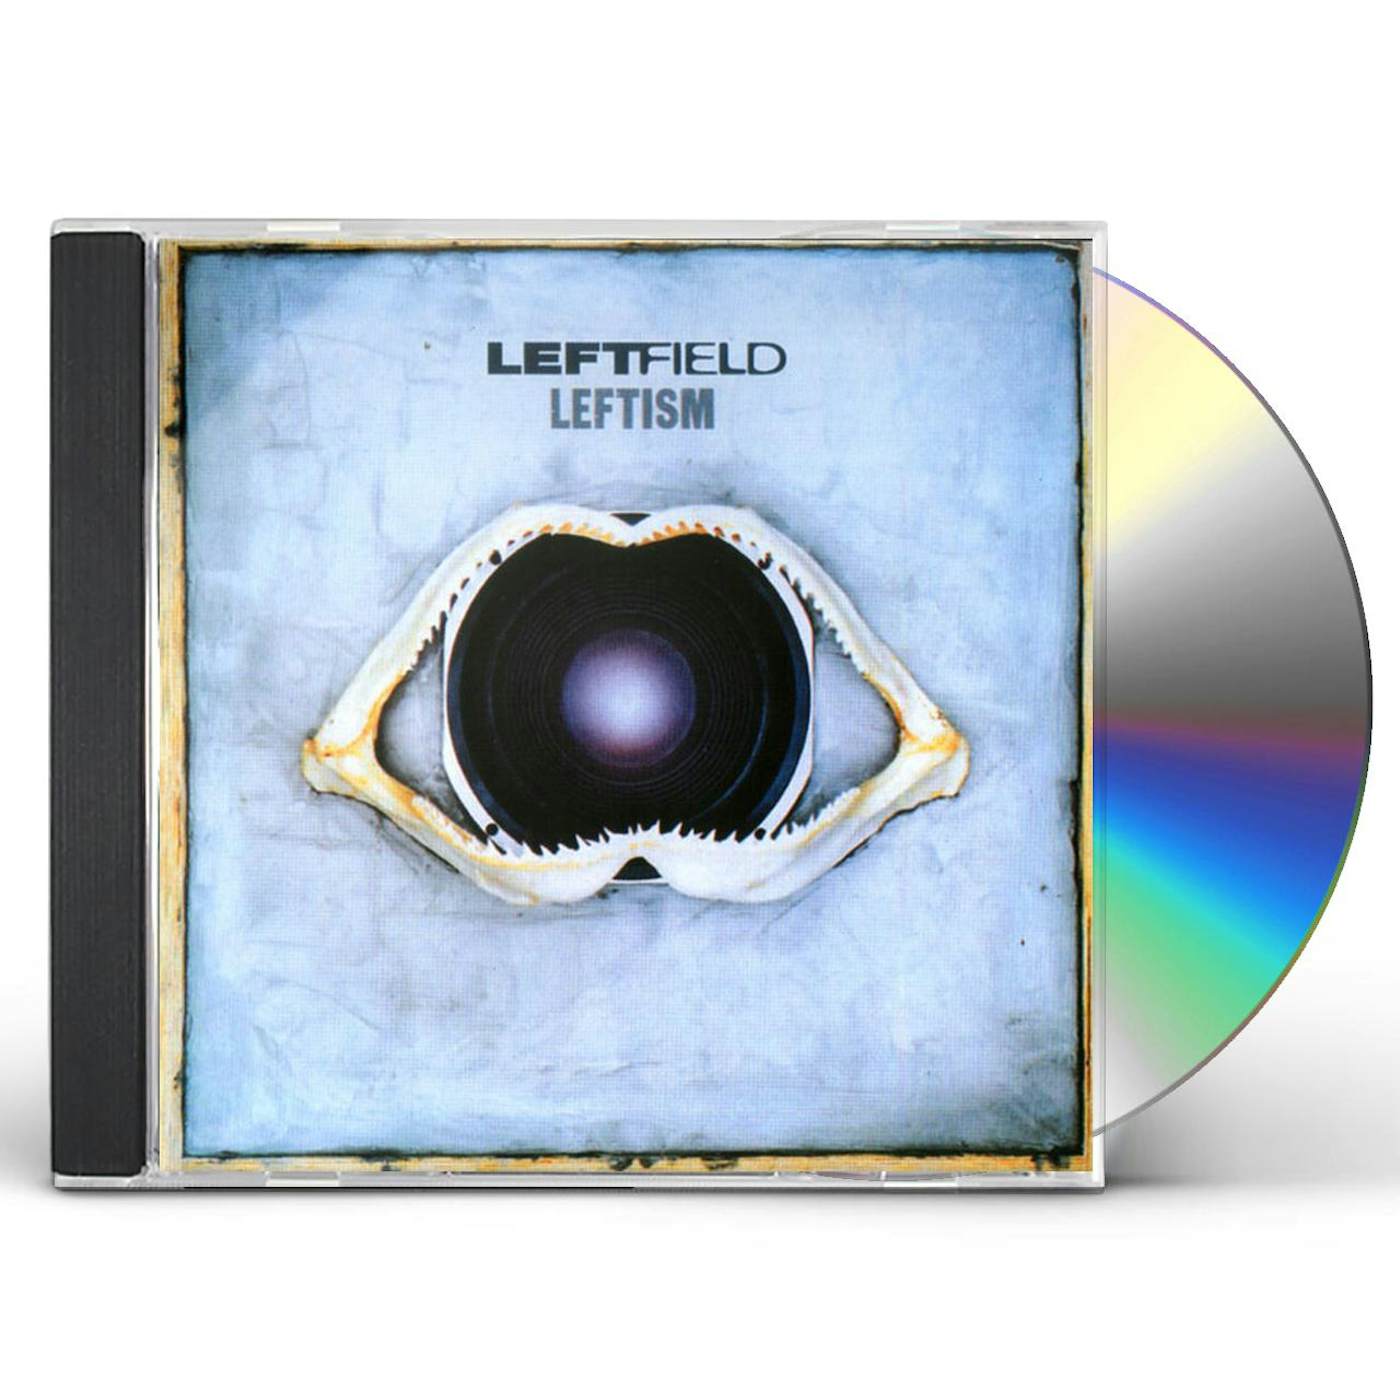 Leftfield LEFTISM CD